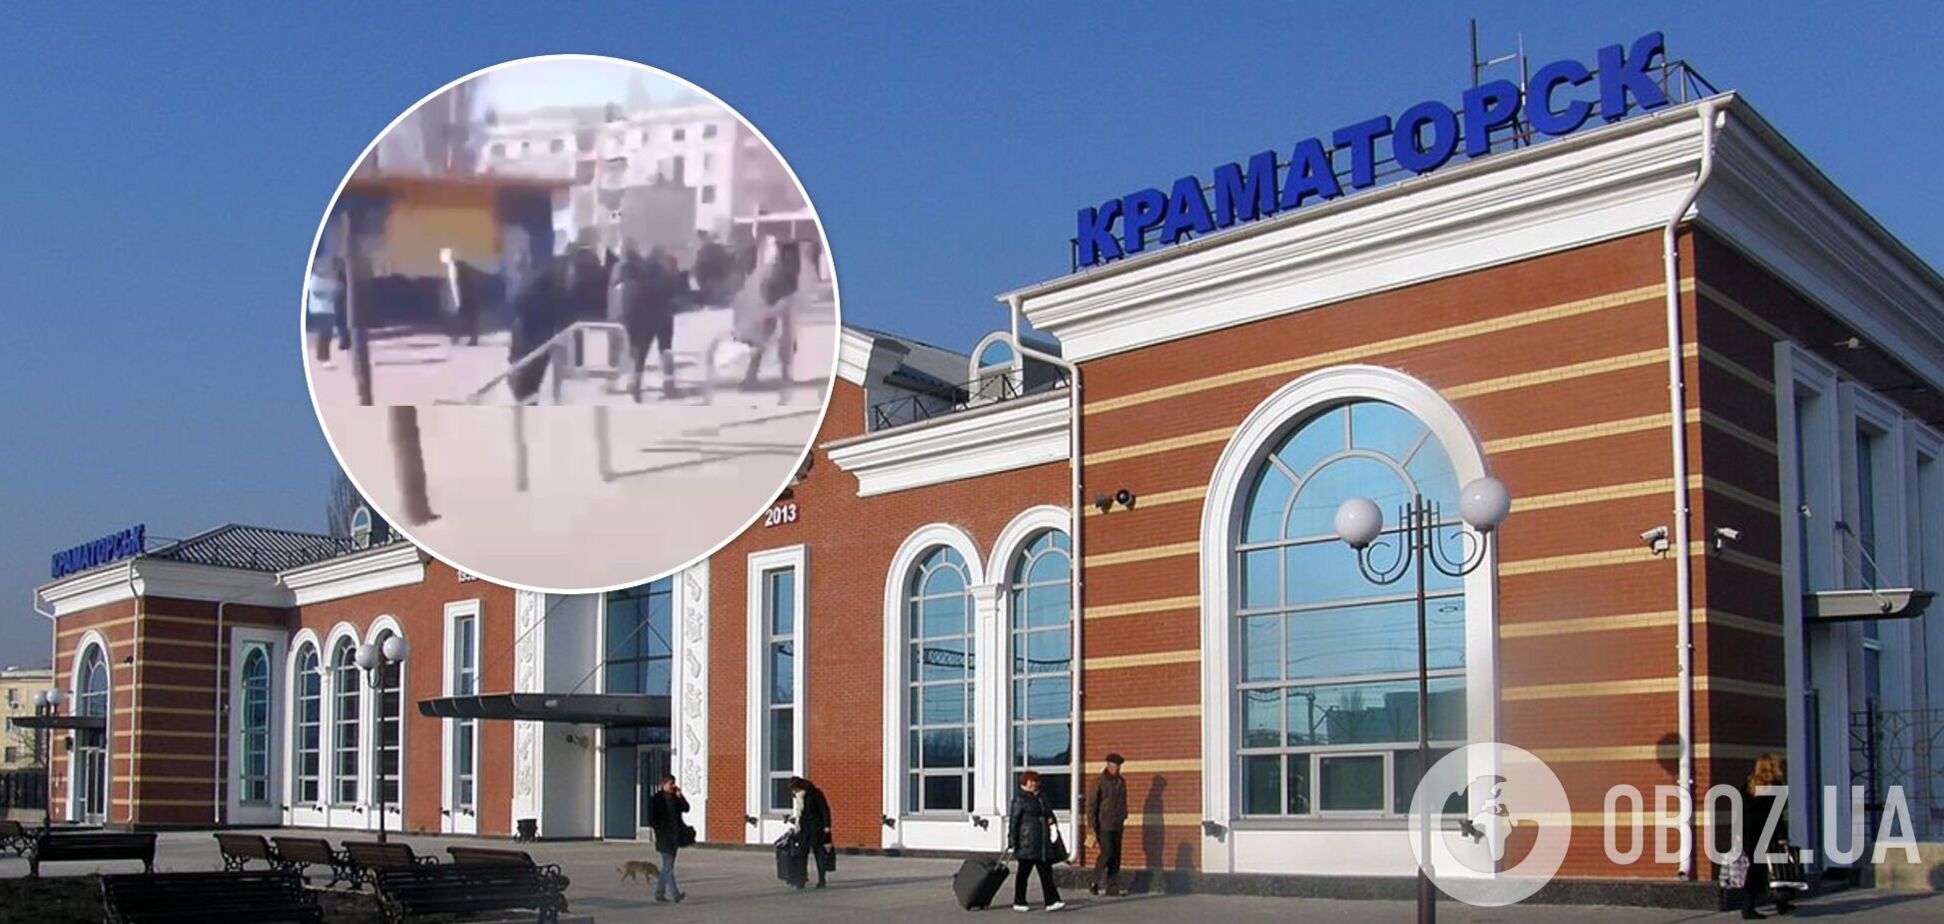 Стояли дикие крики: появились кадры с вокзала в Краматорске сразу после взрыва. Видео 18+